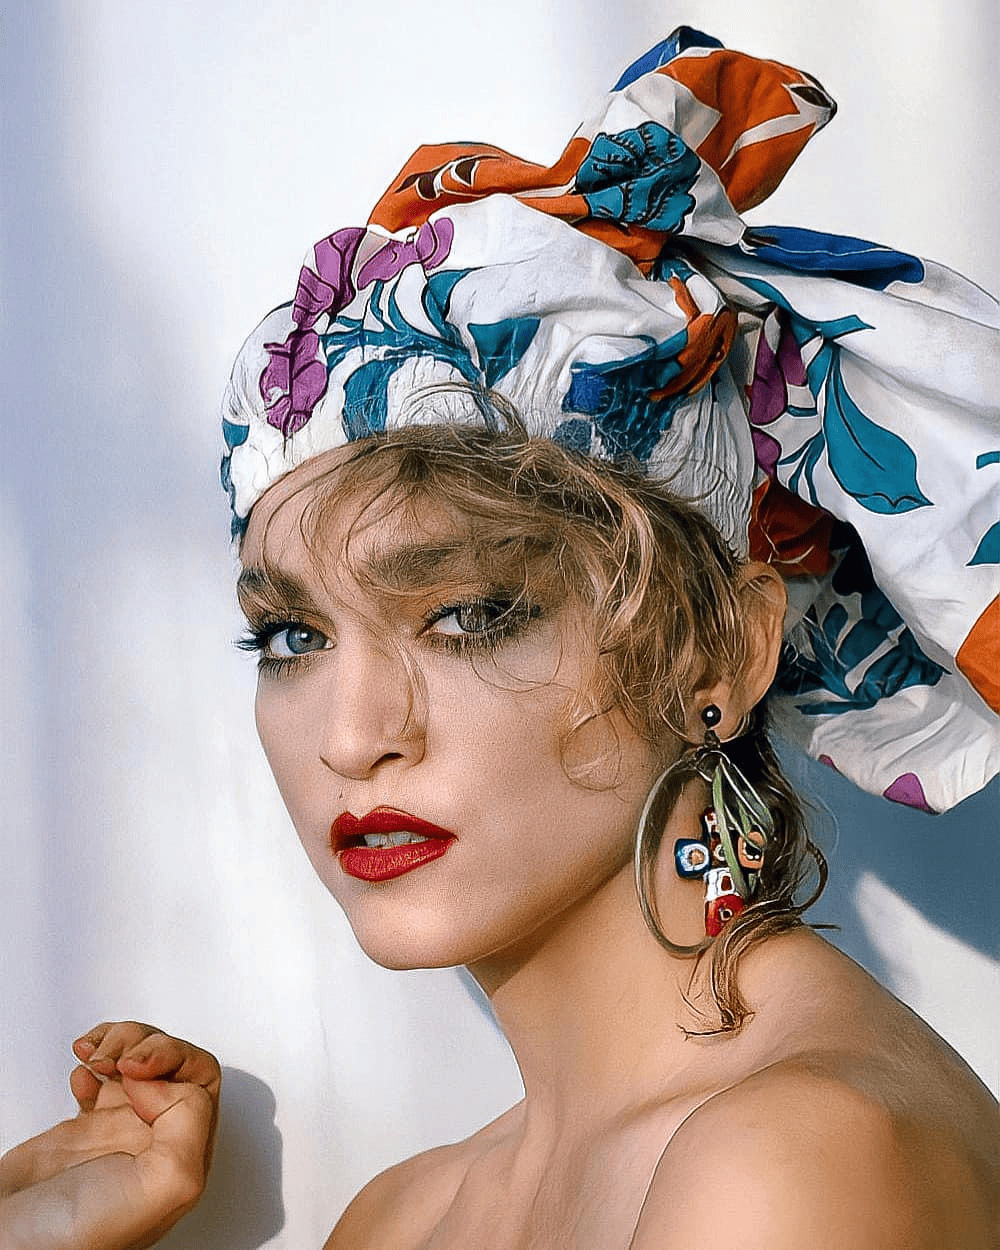 Madonna's makeup